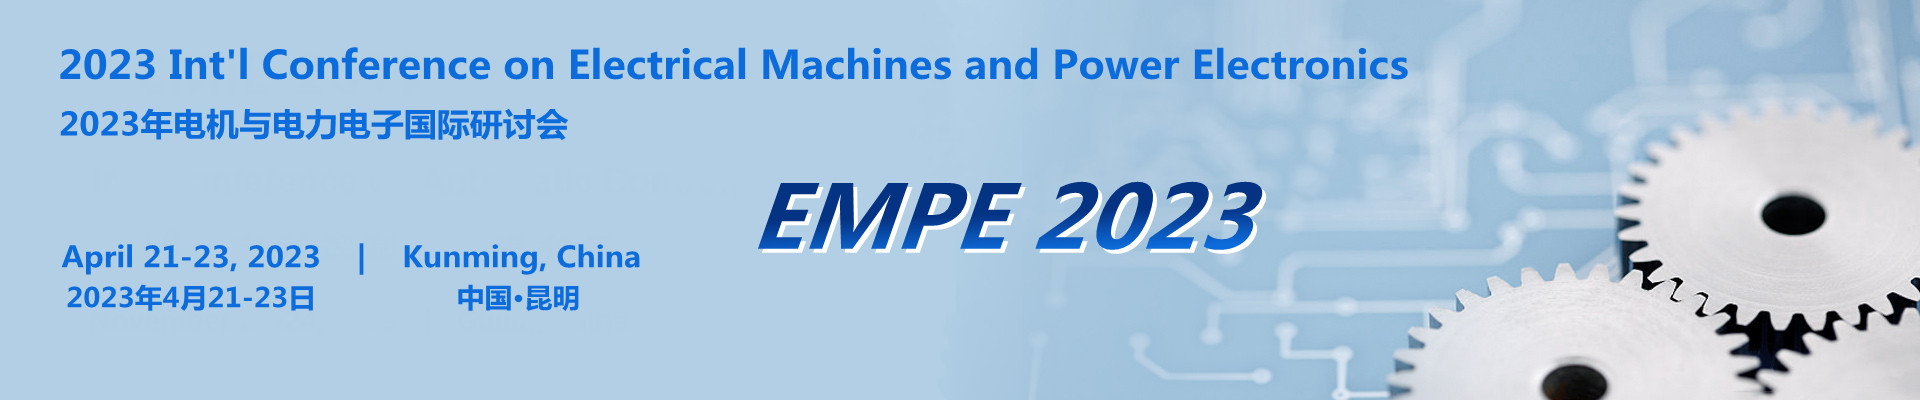 2023年电机与电力电子国际研讨会(EMPE 2023)